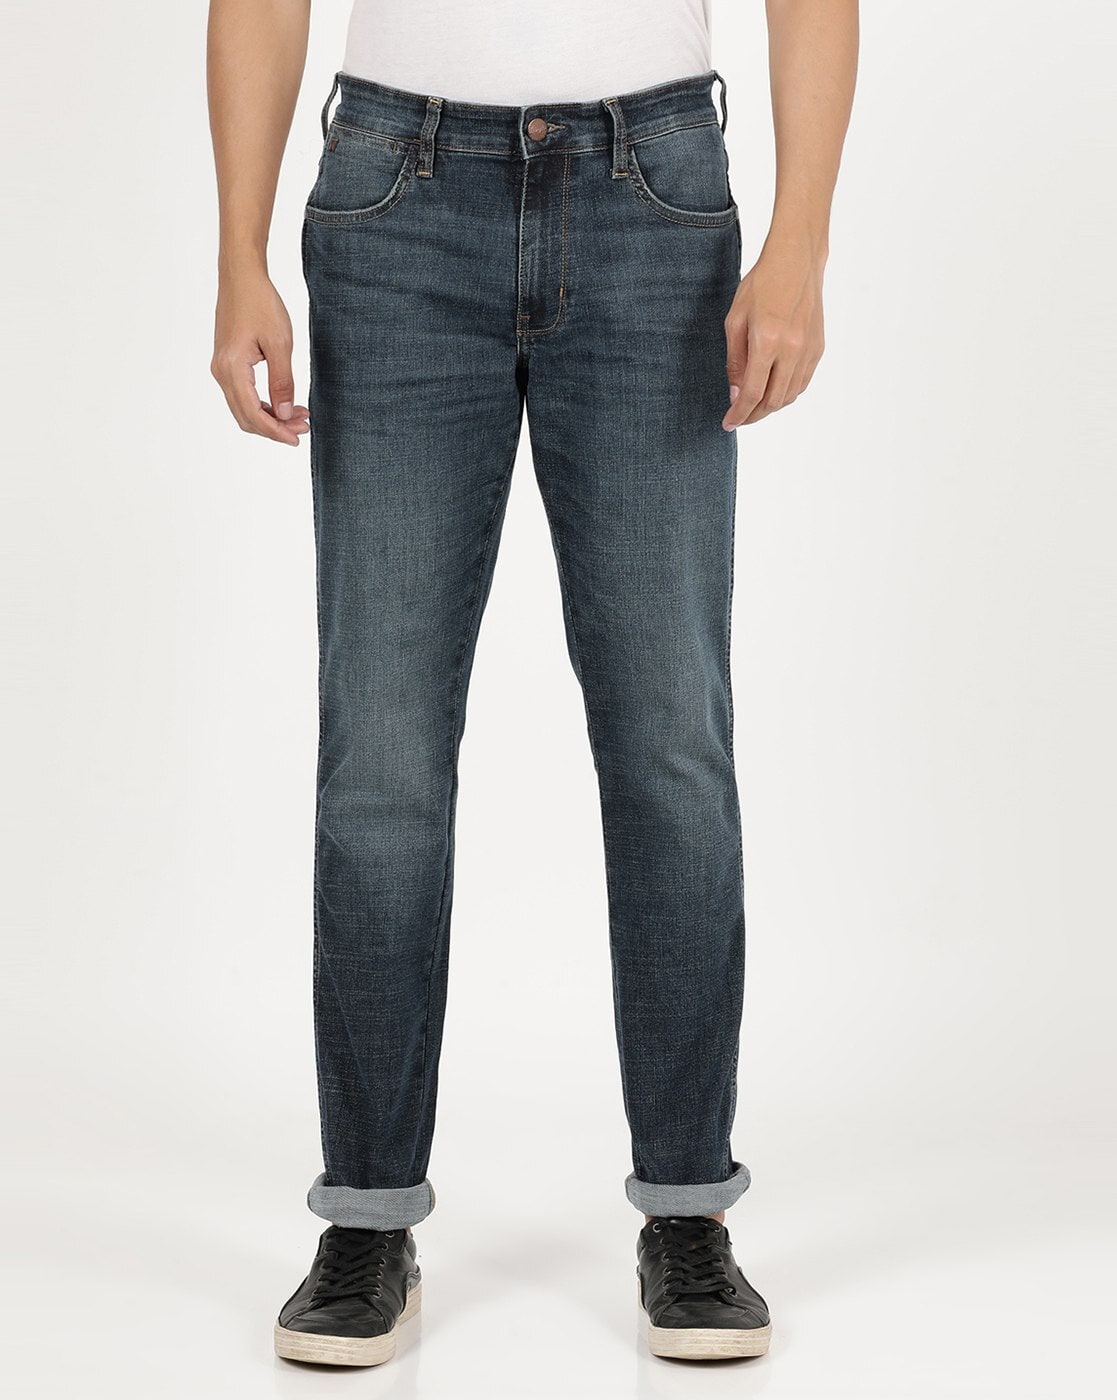 Buy Indigo Jeans for Men by WRANGLER Online 